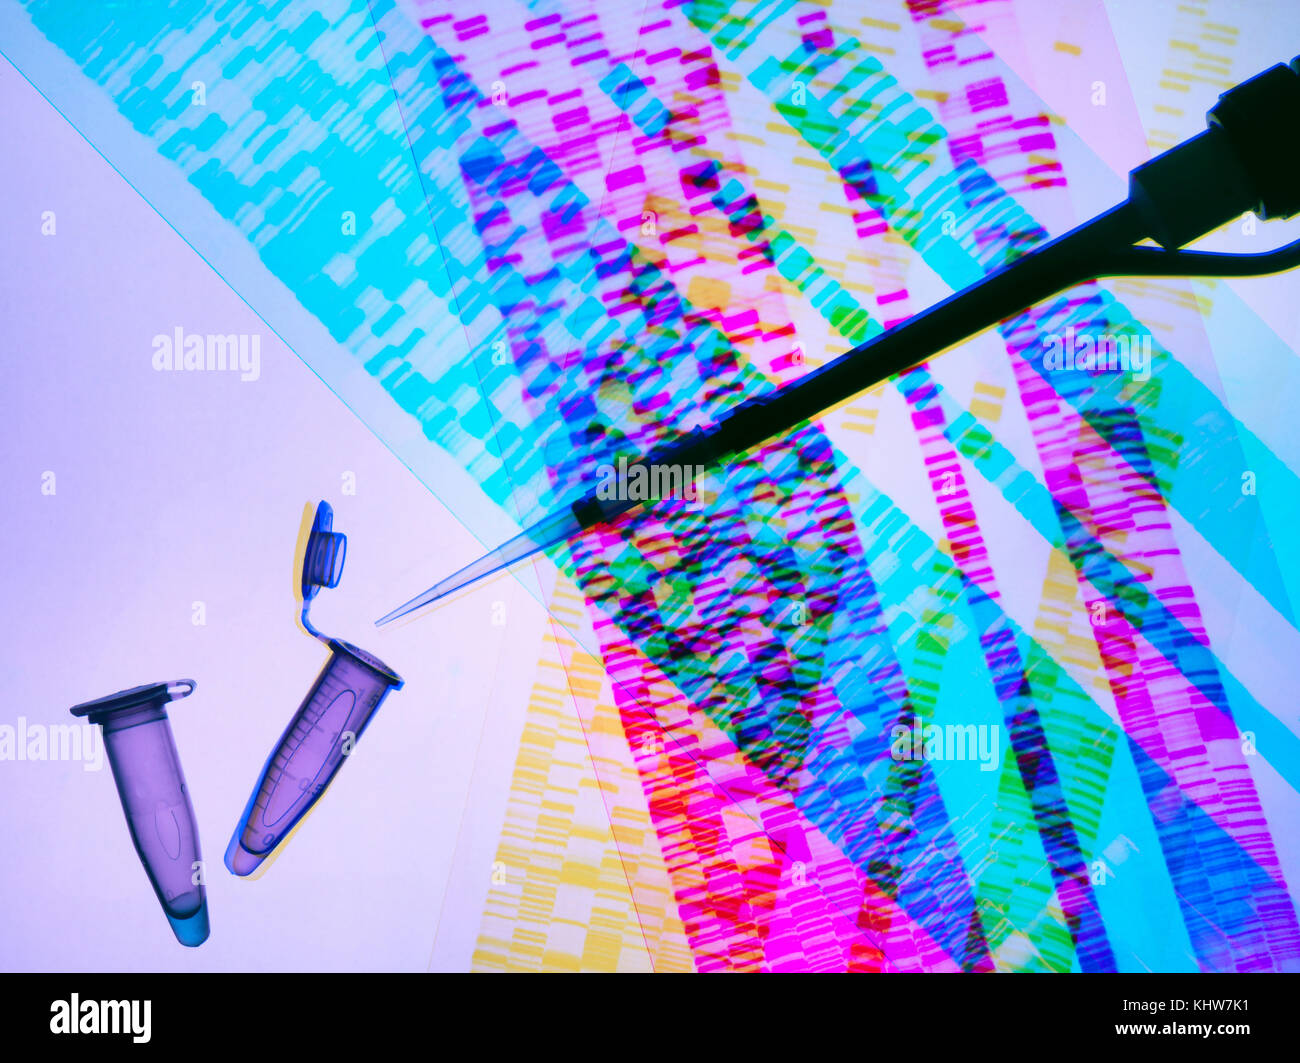 La investigación genética, pipeta y muestras de ADN en el adn autoradiogram ilustrando la investigación en las ciencias de la vida y la modificación genética Foto de stock